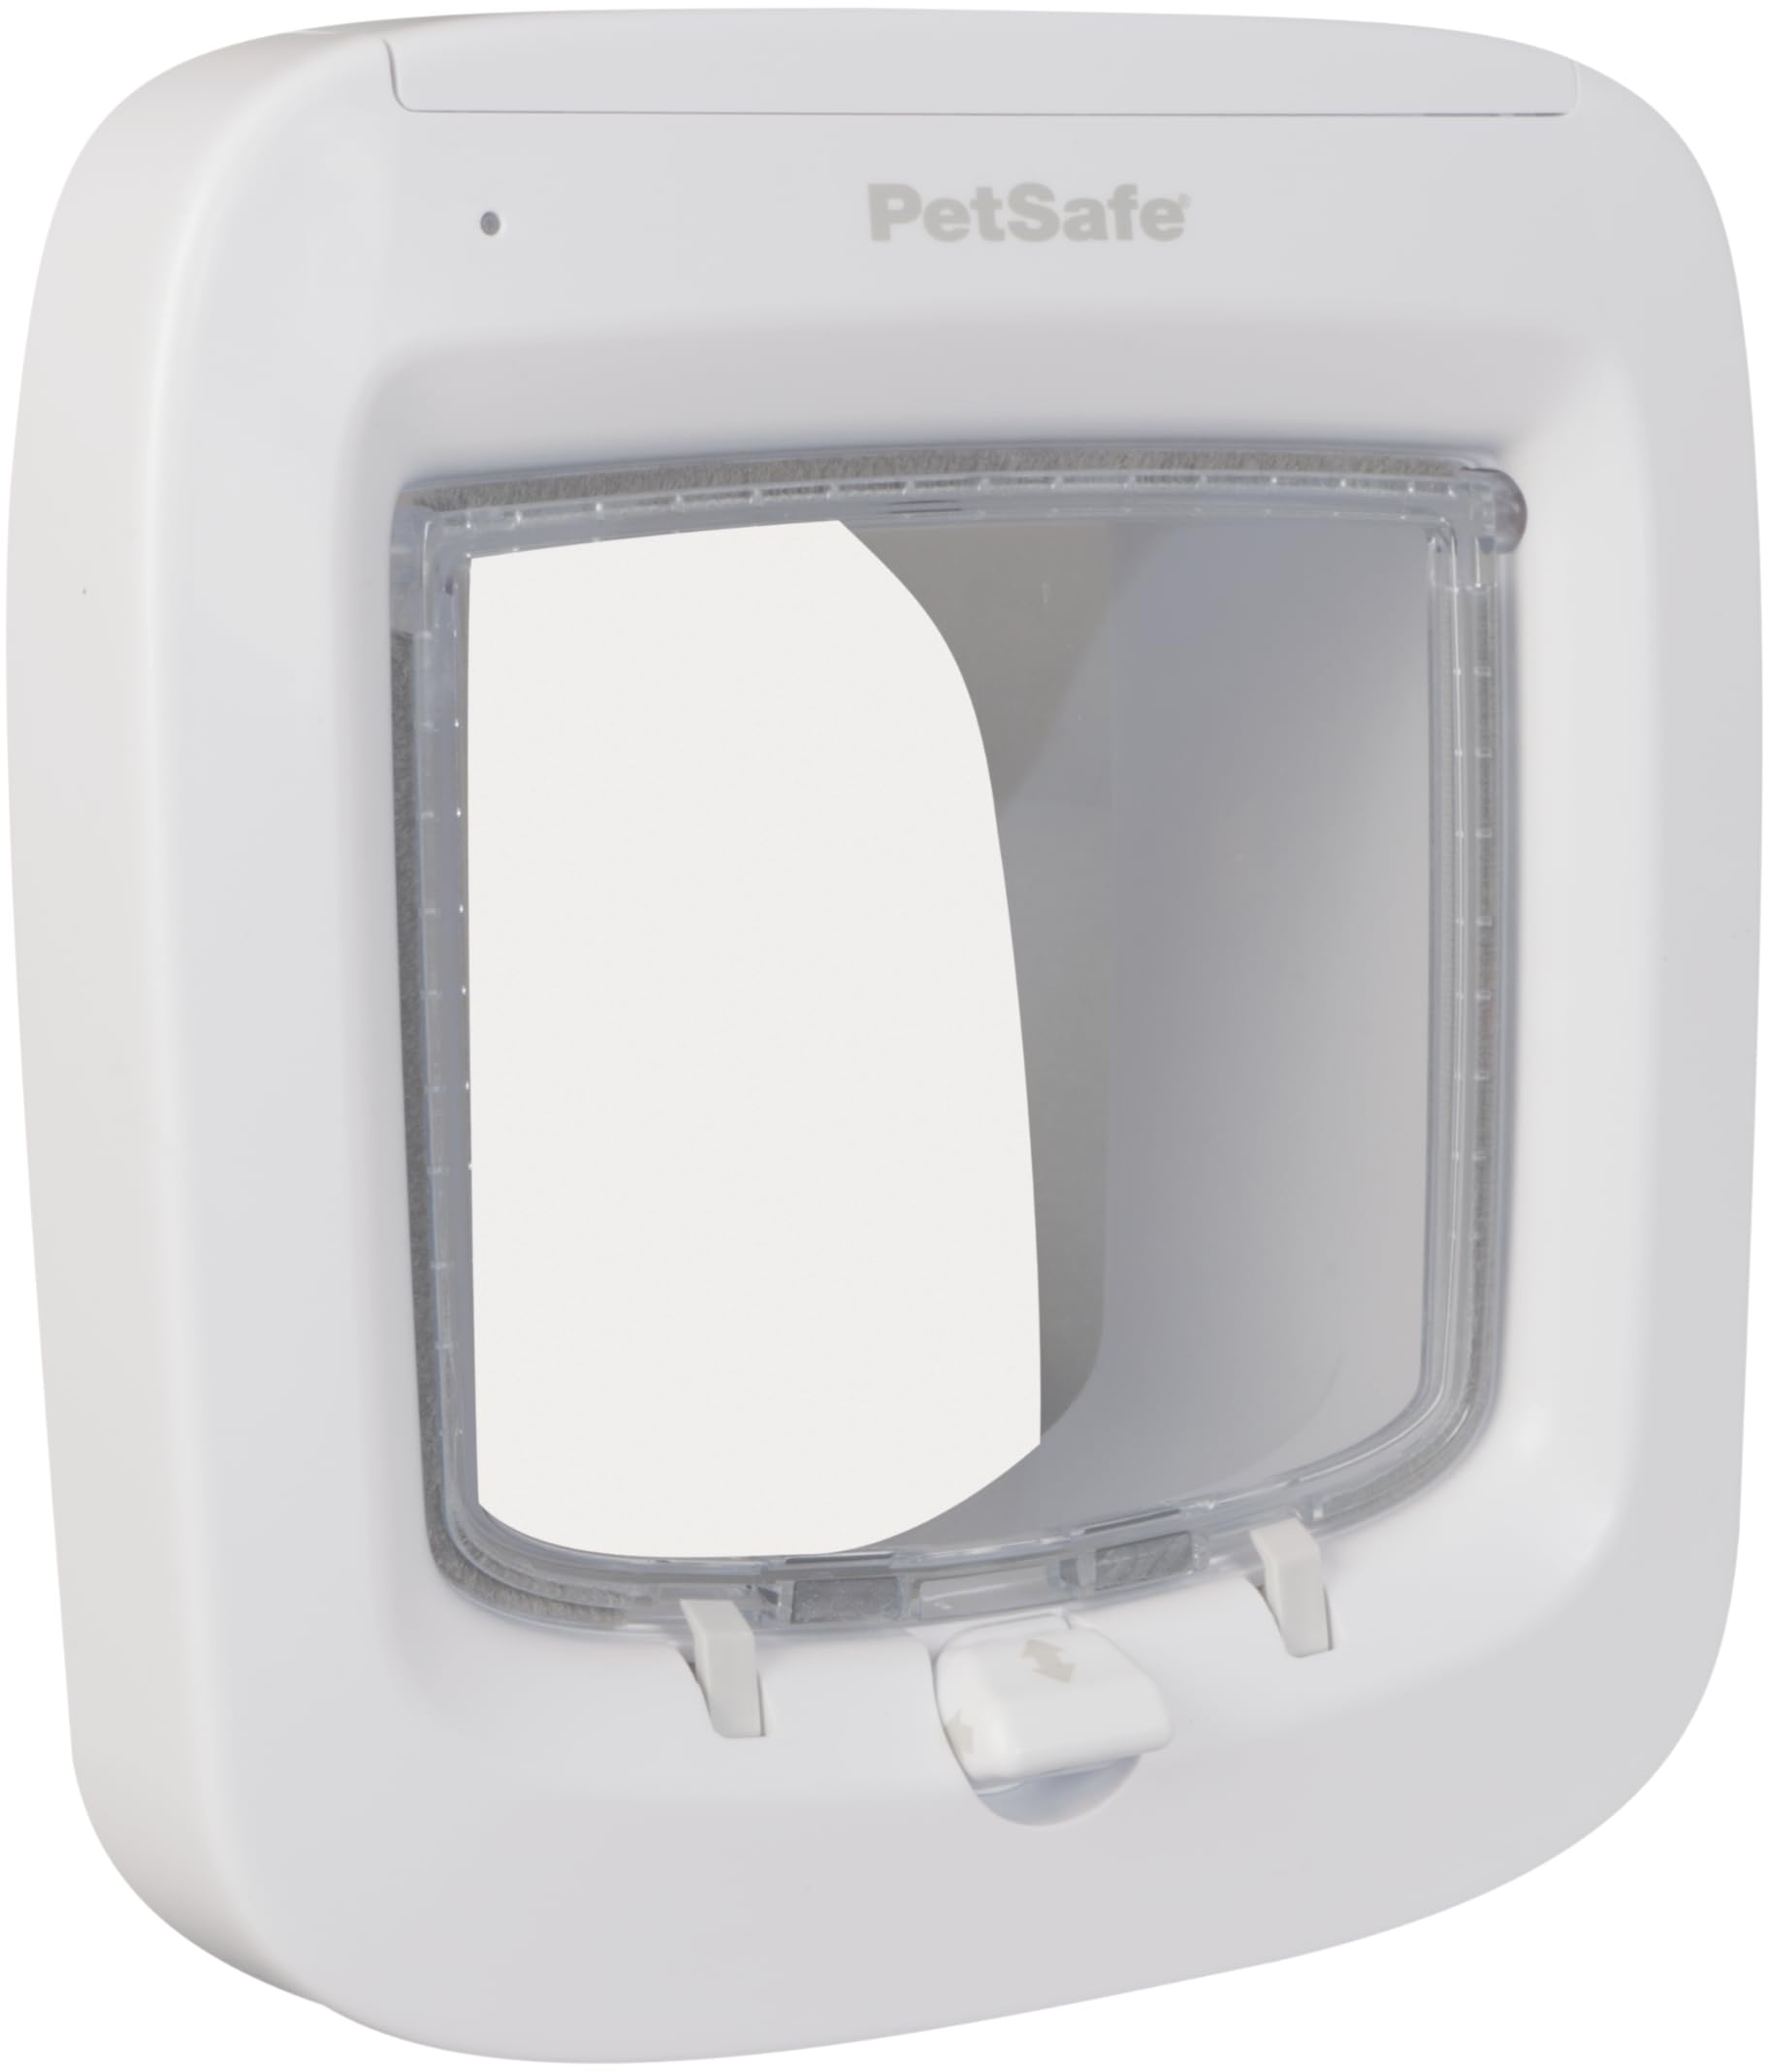 PetSafe Mikrochip Katzenklappe, Selektiver Zugang für Ihre Katze, hält fremde Tiere draußen, Katzen bis 7 kg, Weiß, 1 Stück (1er Pack)